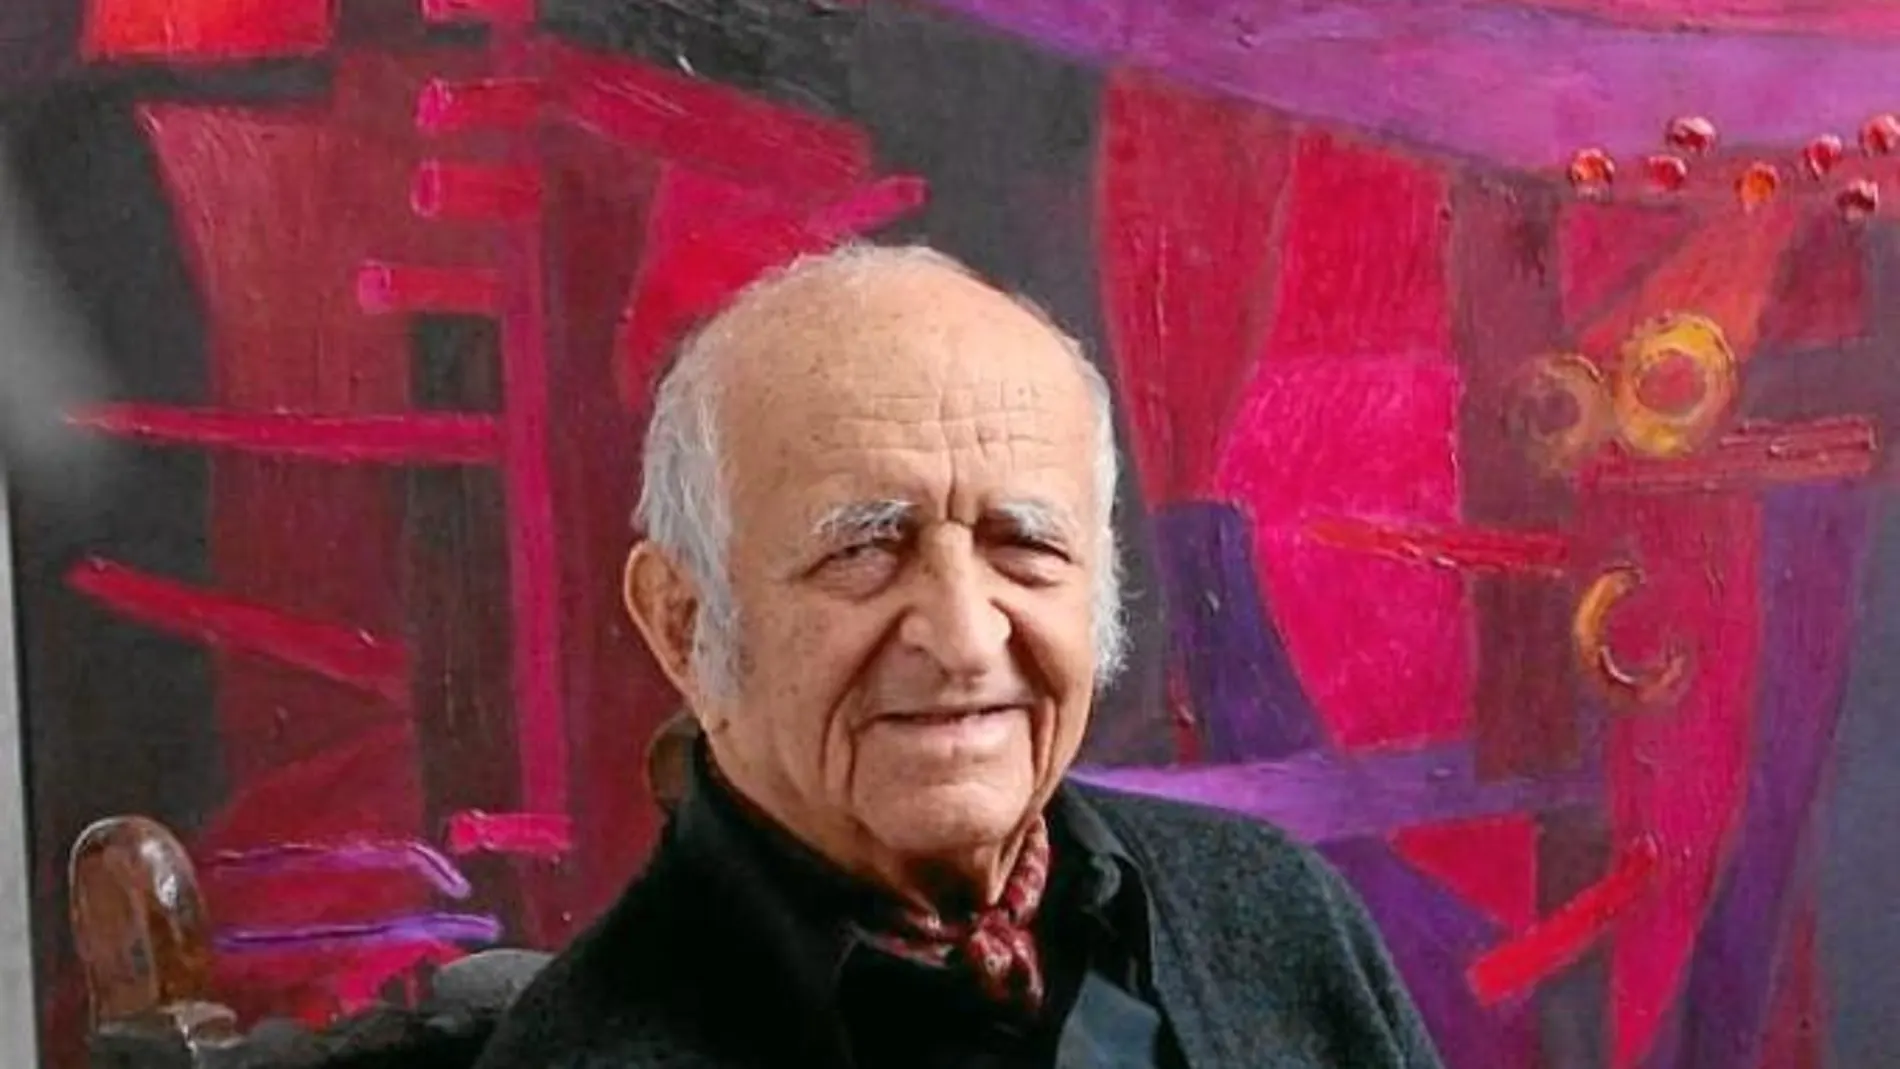 De Szyszlo tiene 92 años y pinta todos los días